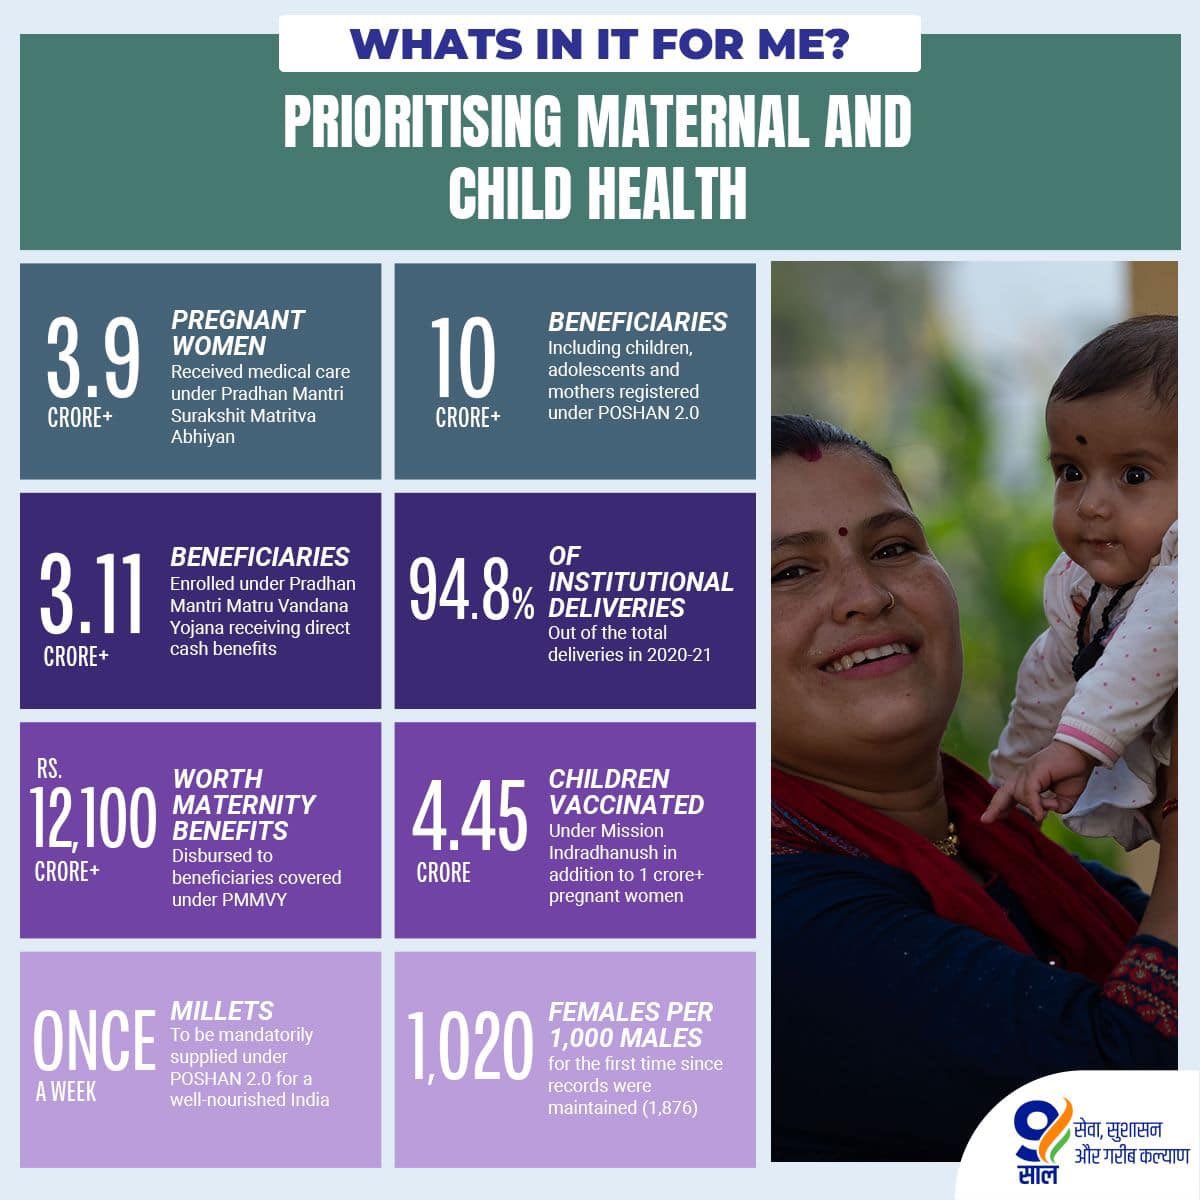 #9YearsOfHealthForAll
Prioritising Maternal and Child Health